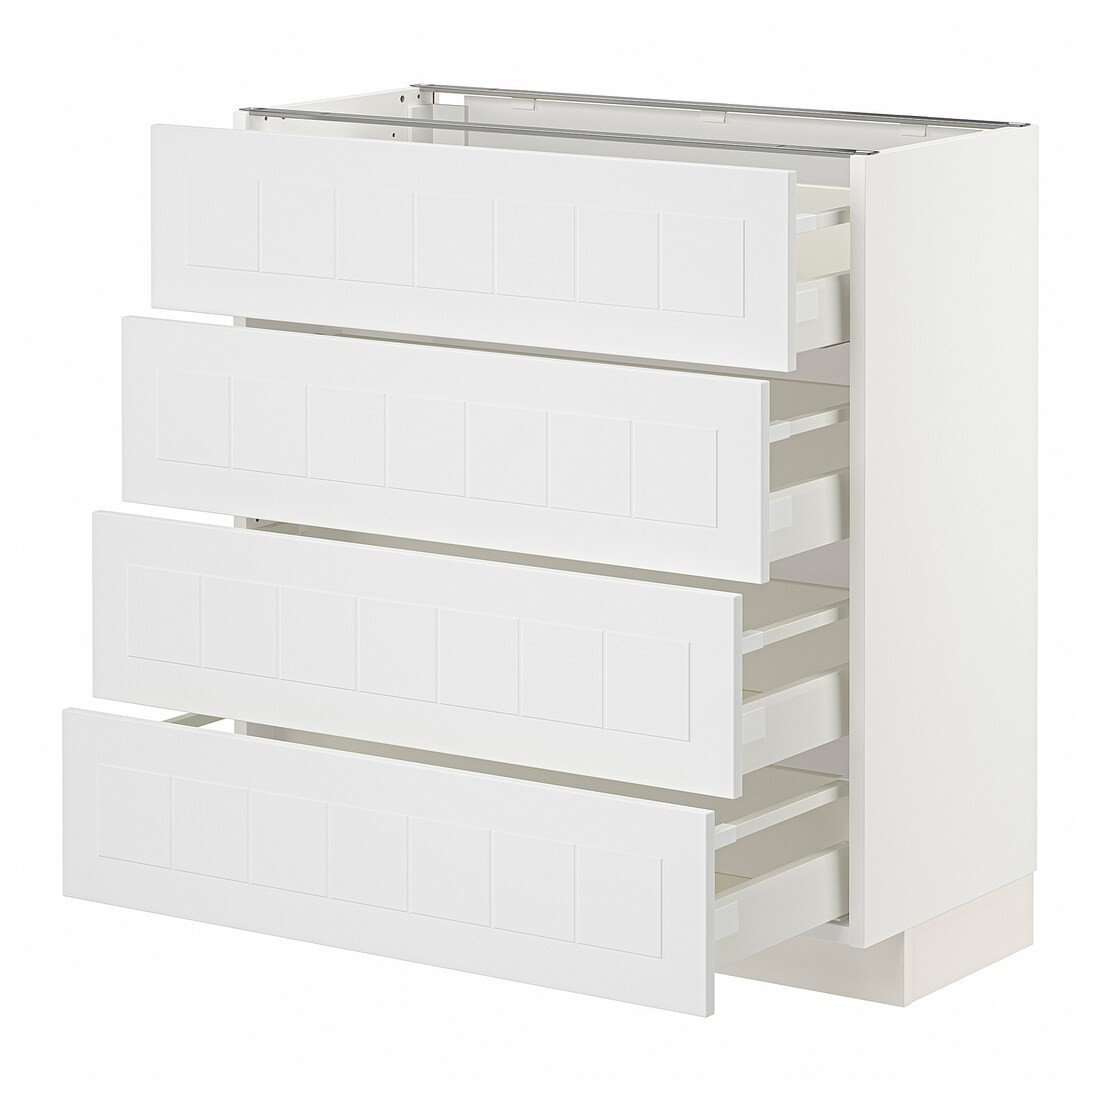 IKEA METOD МЕТОД / MAXIMERA МАКСИМЕРА Напольный шкаф 4 ящика, белый / Stensund белый, 80x37 см 59409488 594.094.88